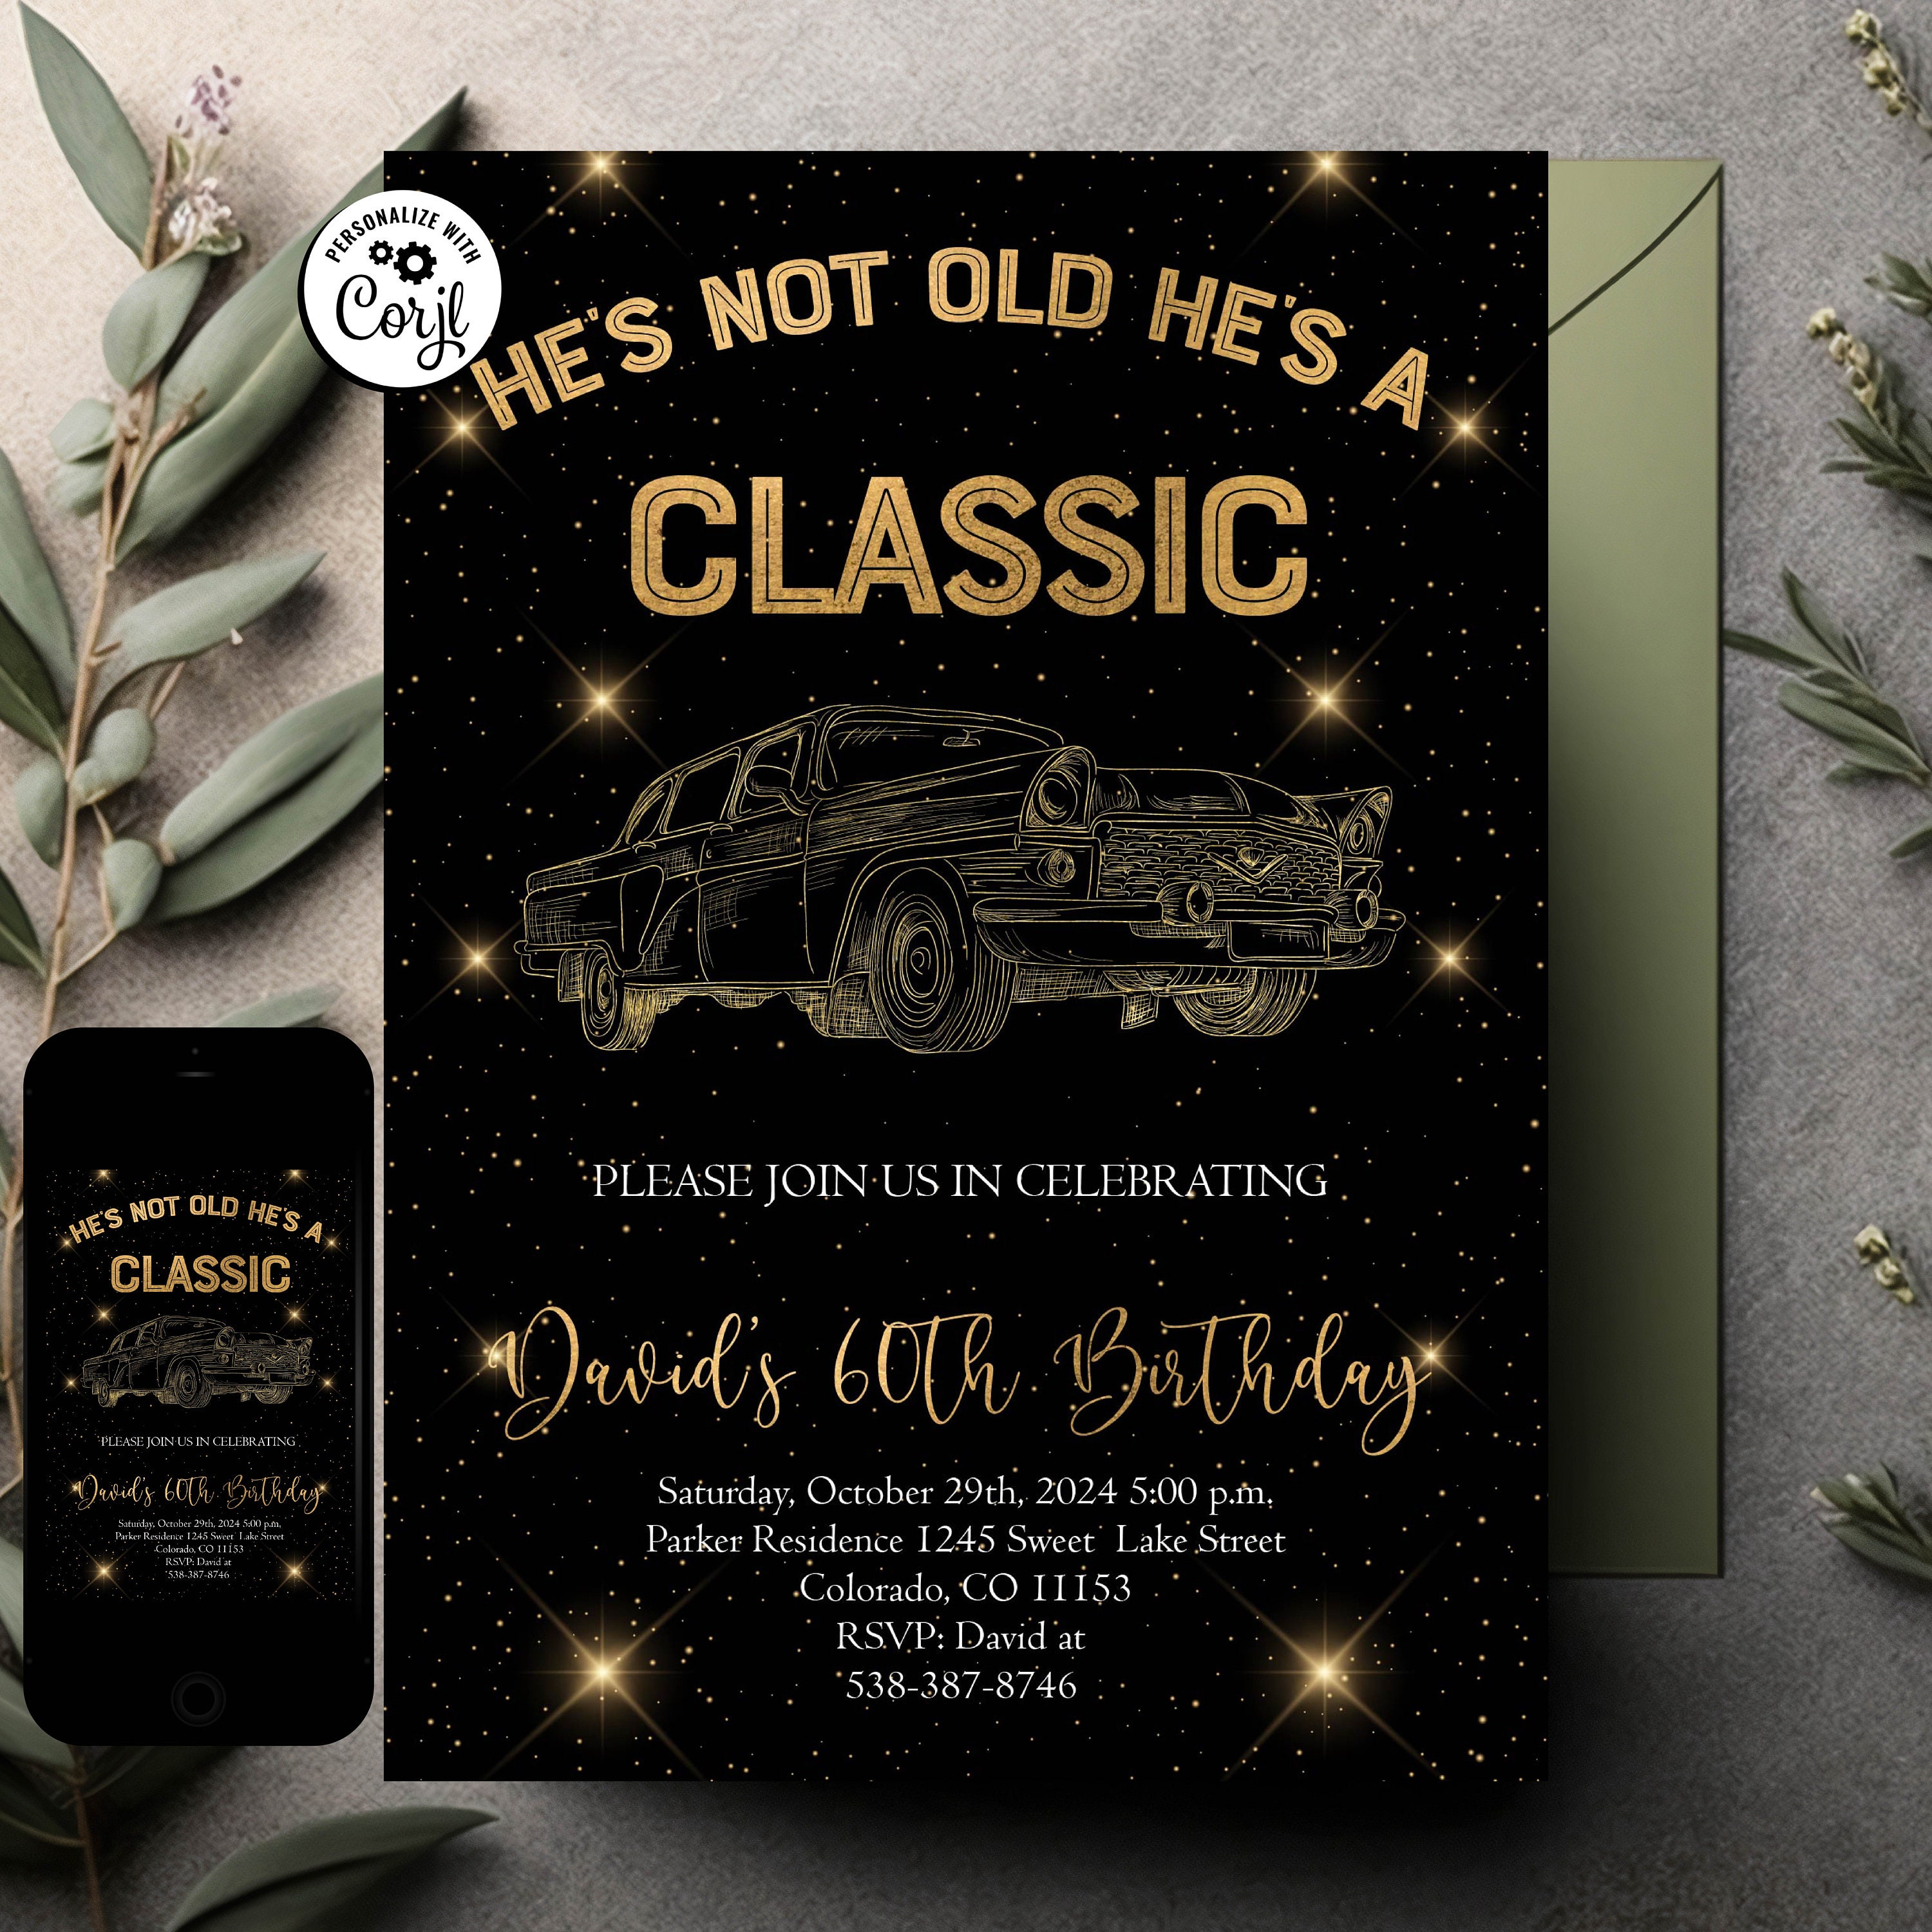 Invitation personnalisée anniversaire garçon au thème voiture vintage. –  Omade